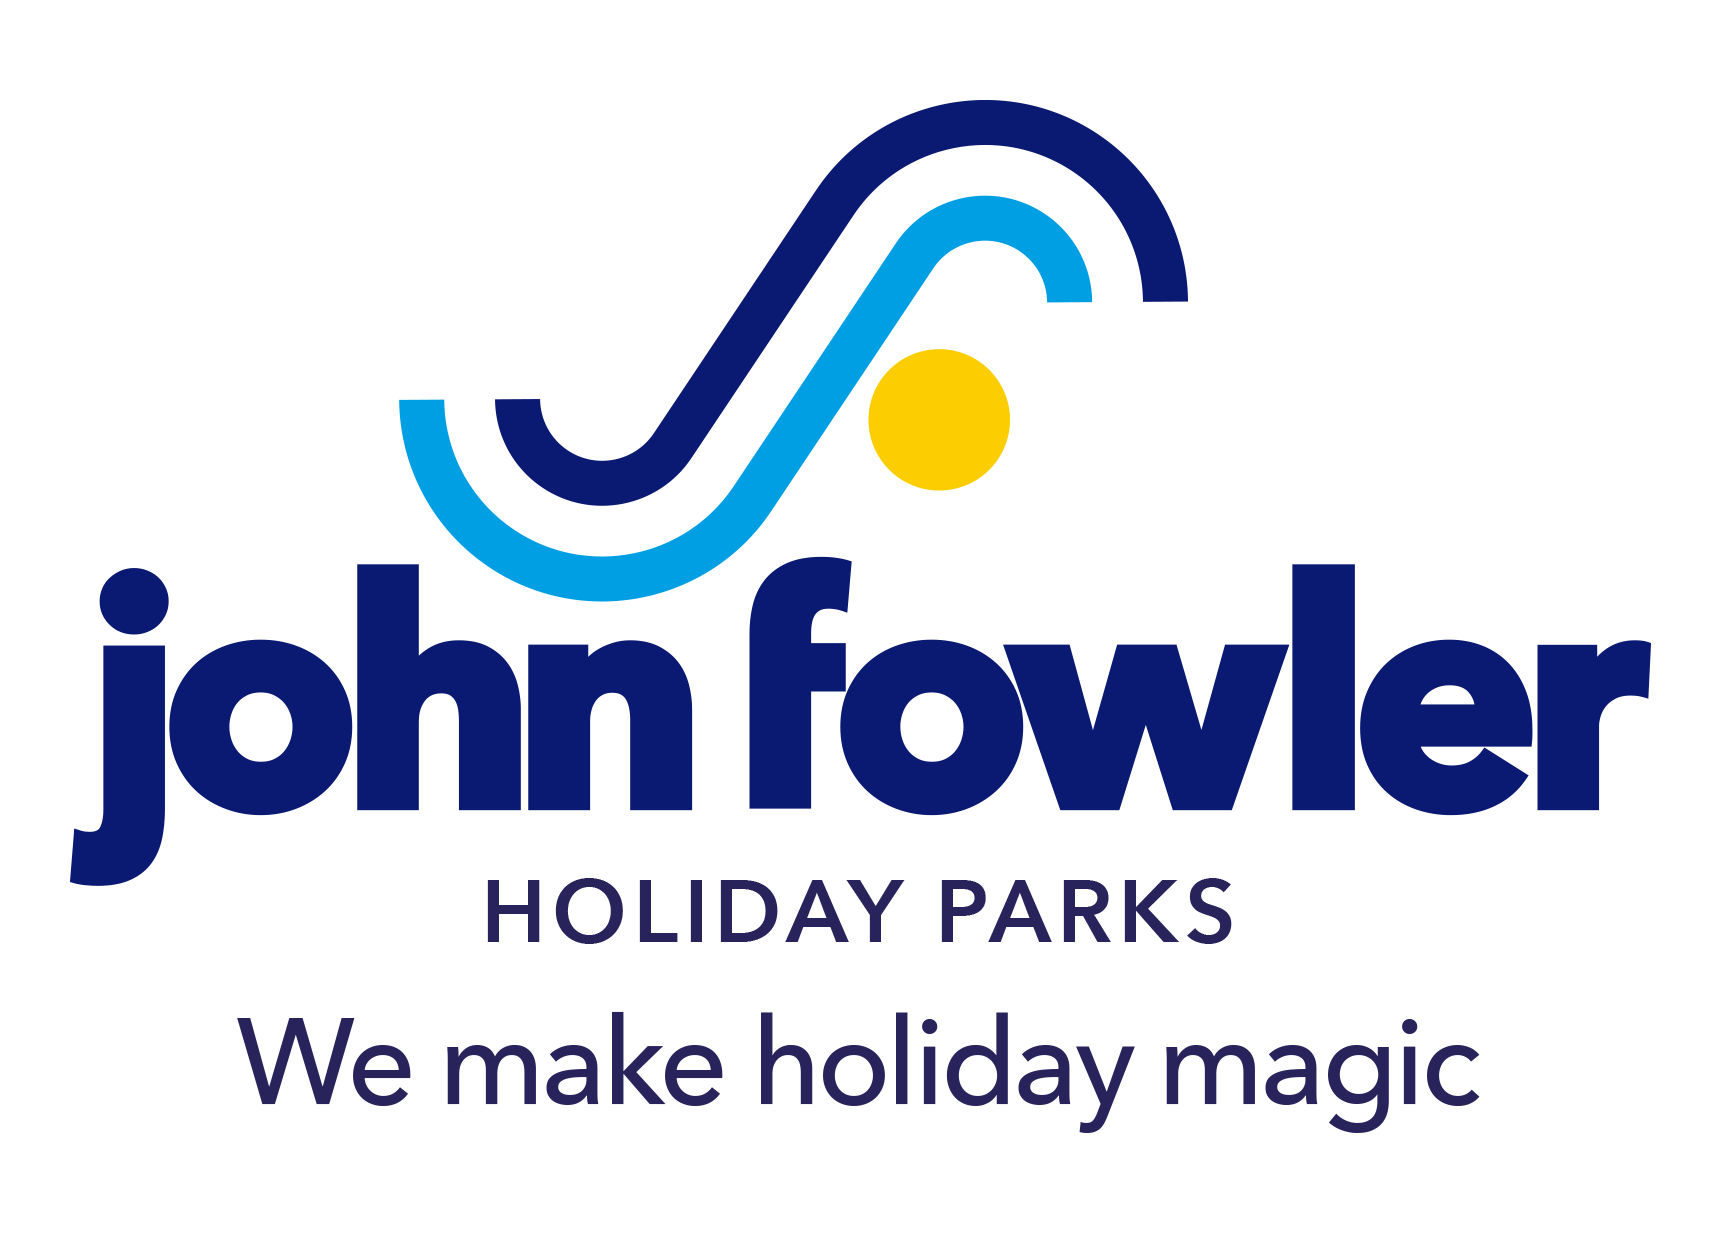 John Fowler Holidays